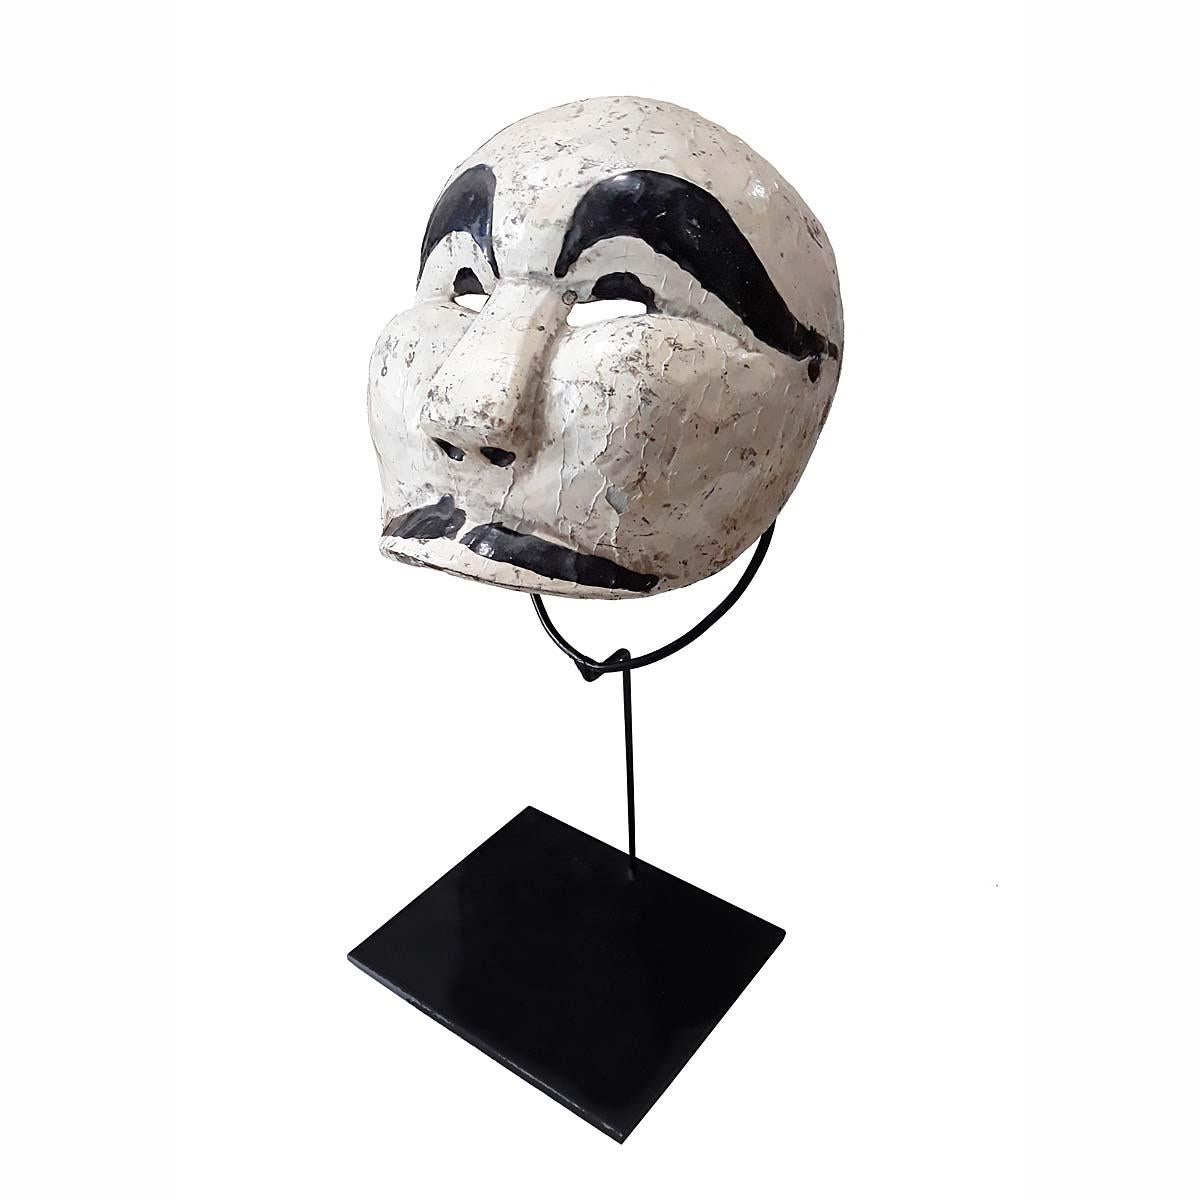 Eine alte Penasar-Maske aus Indonesien, ca. 1975-1980. Handgeschnitztes Teakholz, polychromiert in Weiß und Schwarz. Montiert auf einem schwarzen Metallständer. 

Diese Art von Maske wird bei indonesischen Topeng- oder Maskentheatertänzen